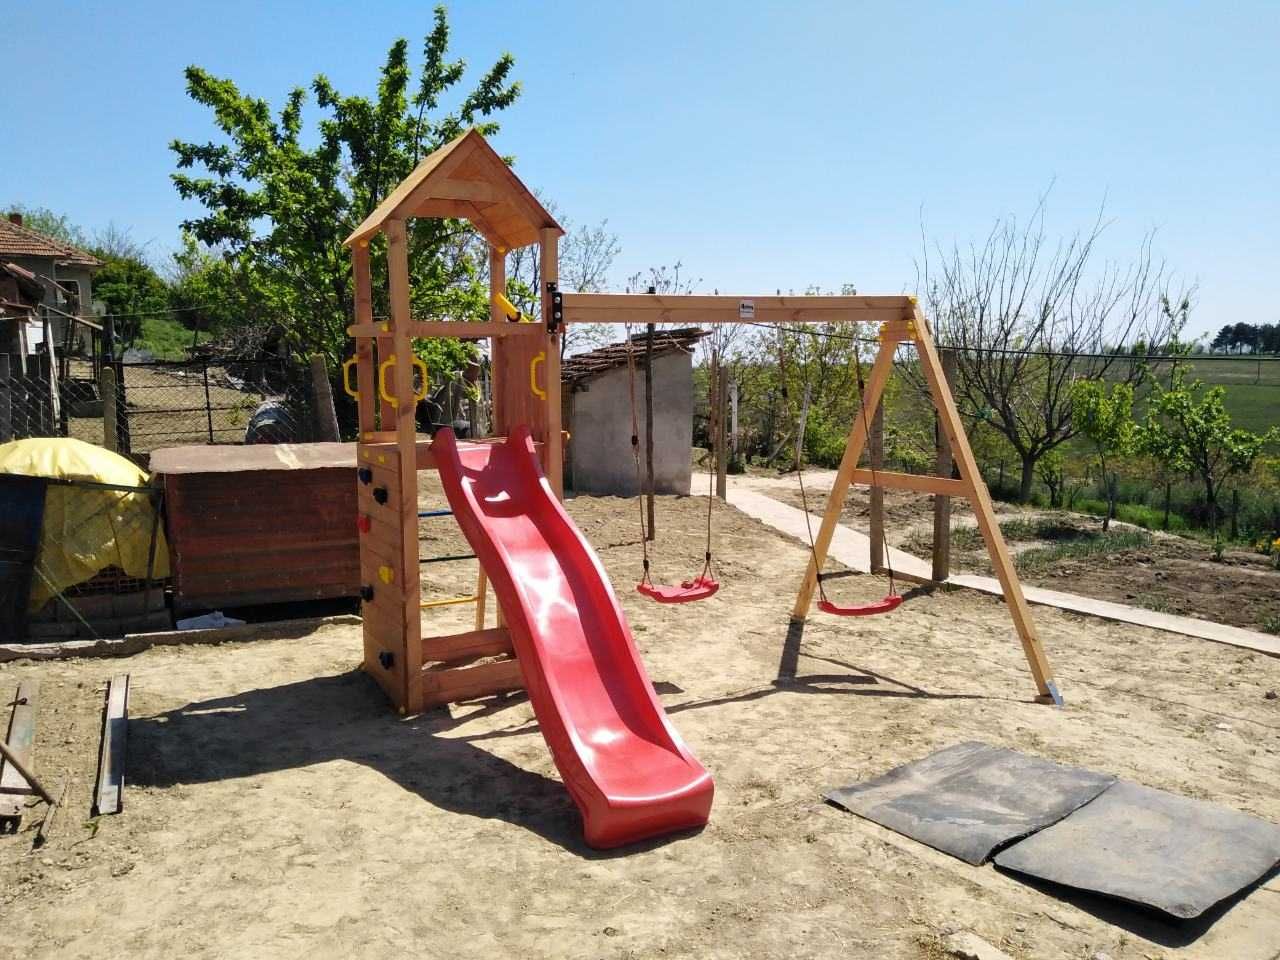 Fungoo FLAPPI дървена детска площадка с пързалка и 2 люлк